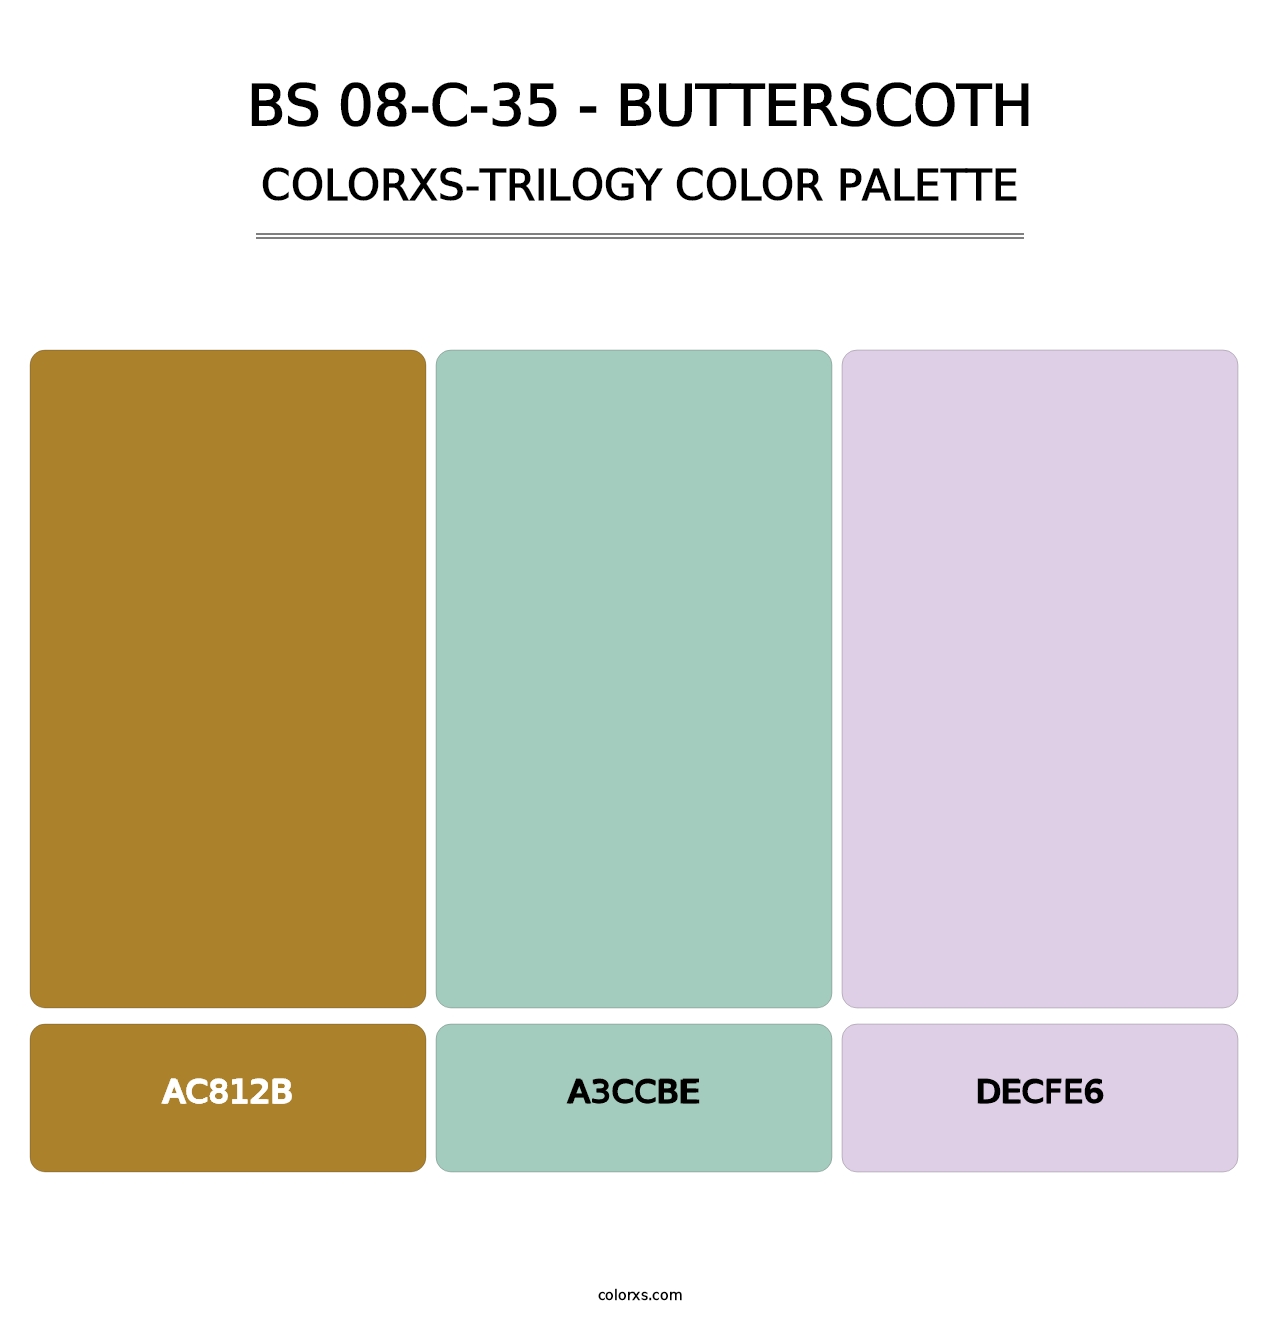 BS 08-C-35 - Butterscoth - Colorxs Trilogy Palette